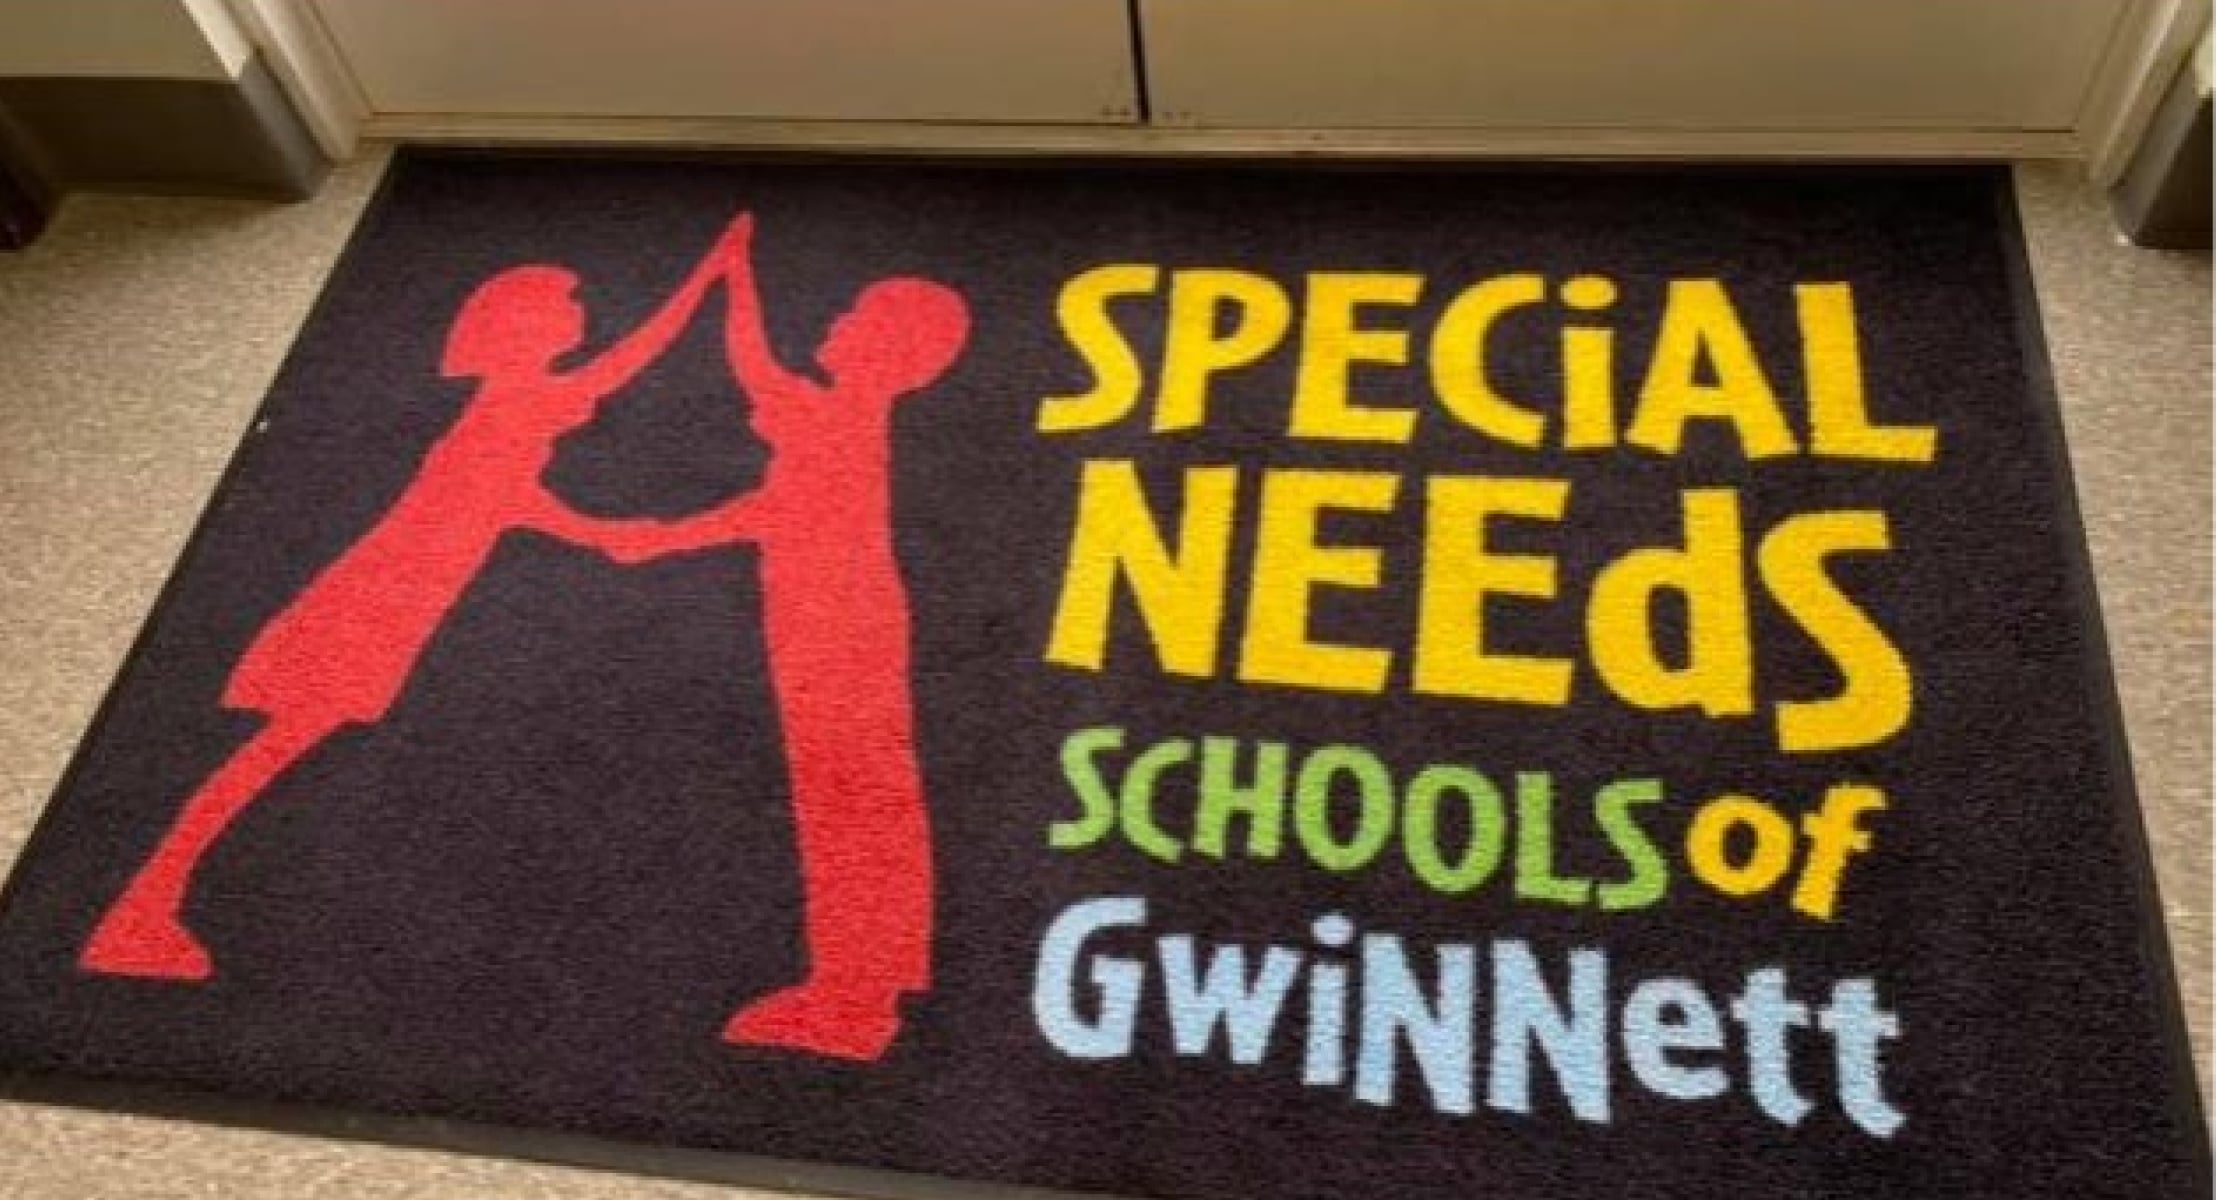 Special needs school